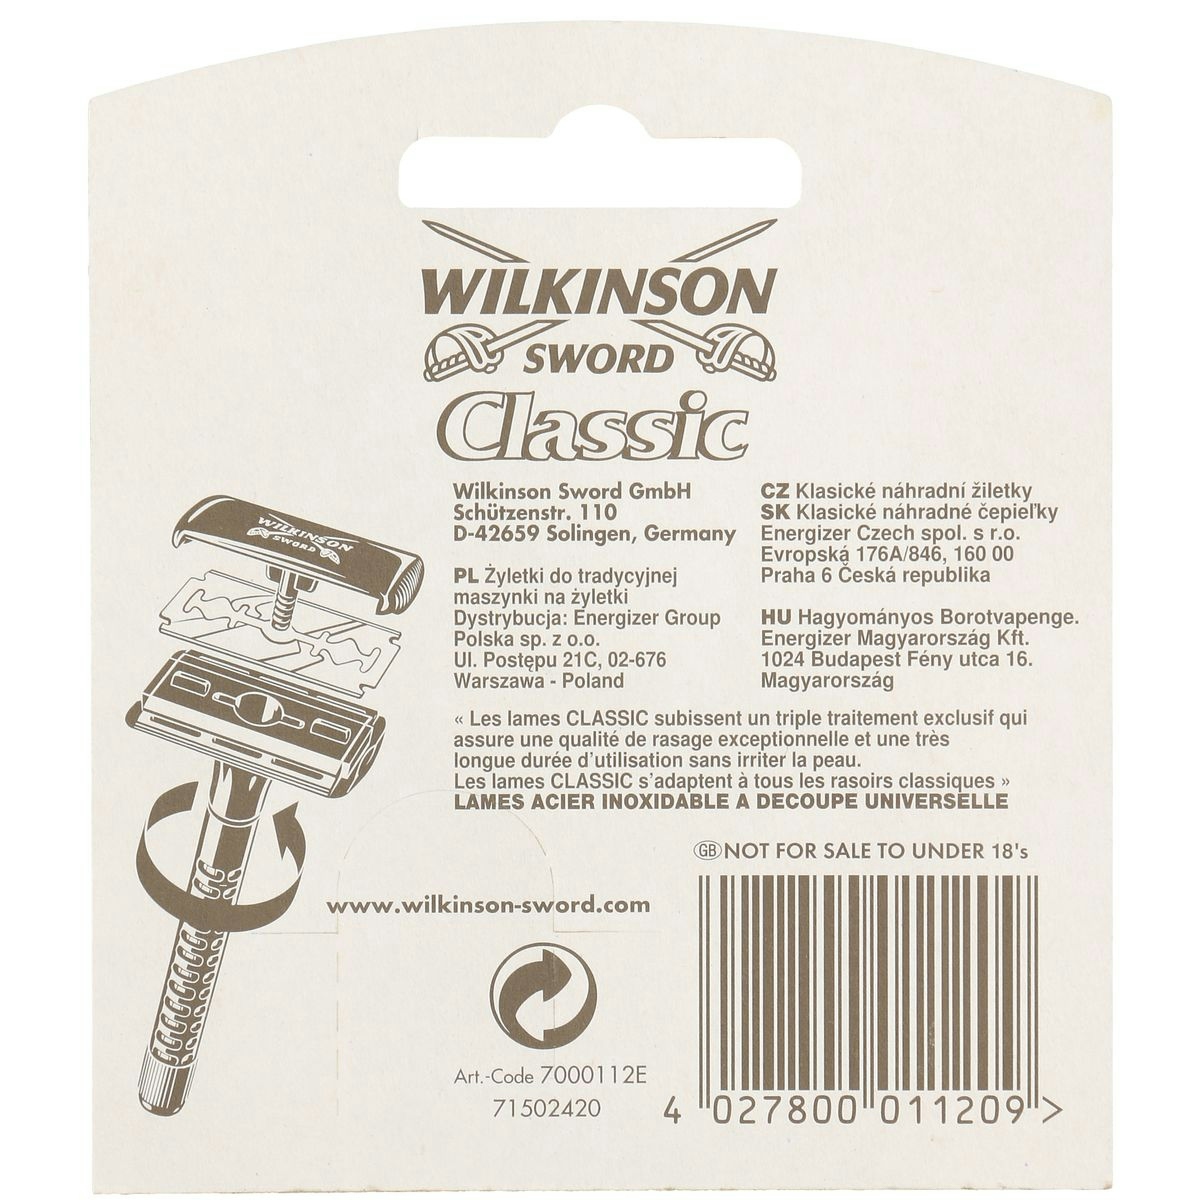 Hojas de afeitar WILKINSON Sword classic blíster 5 uds